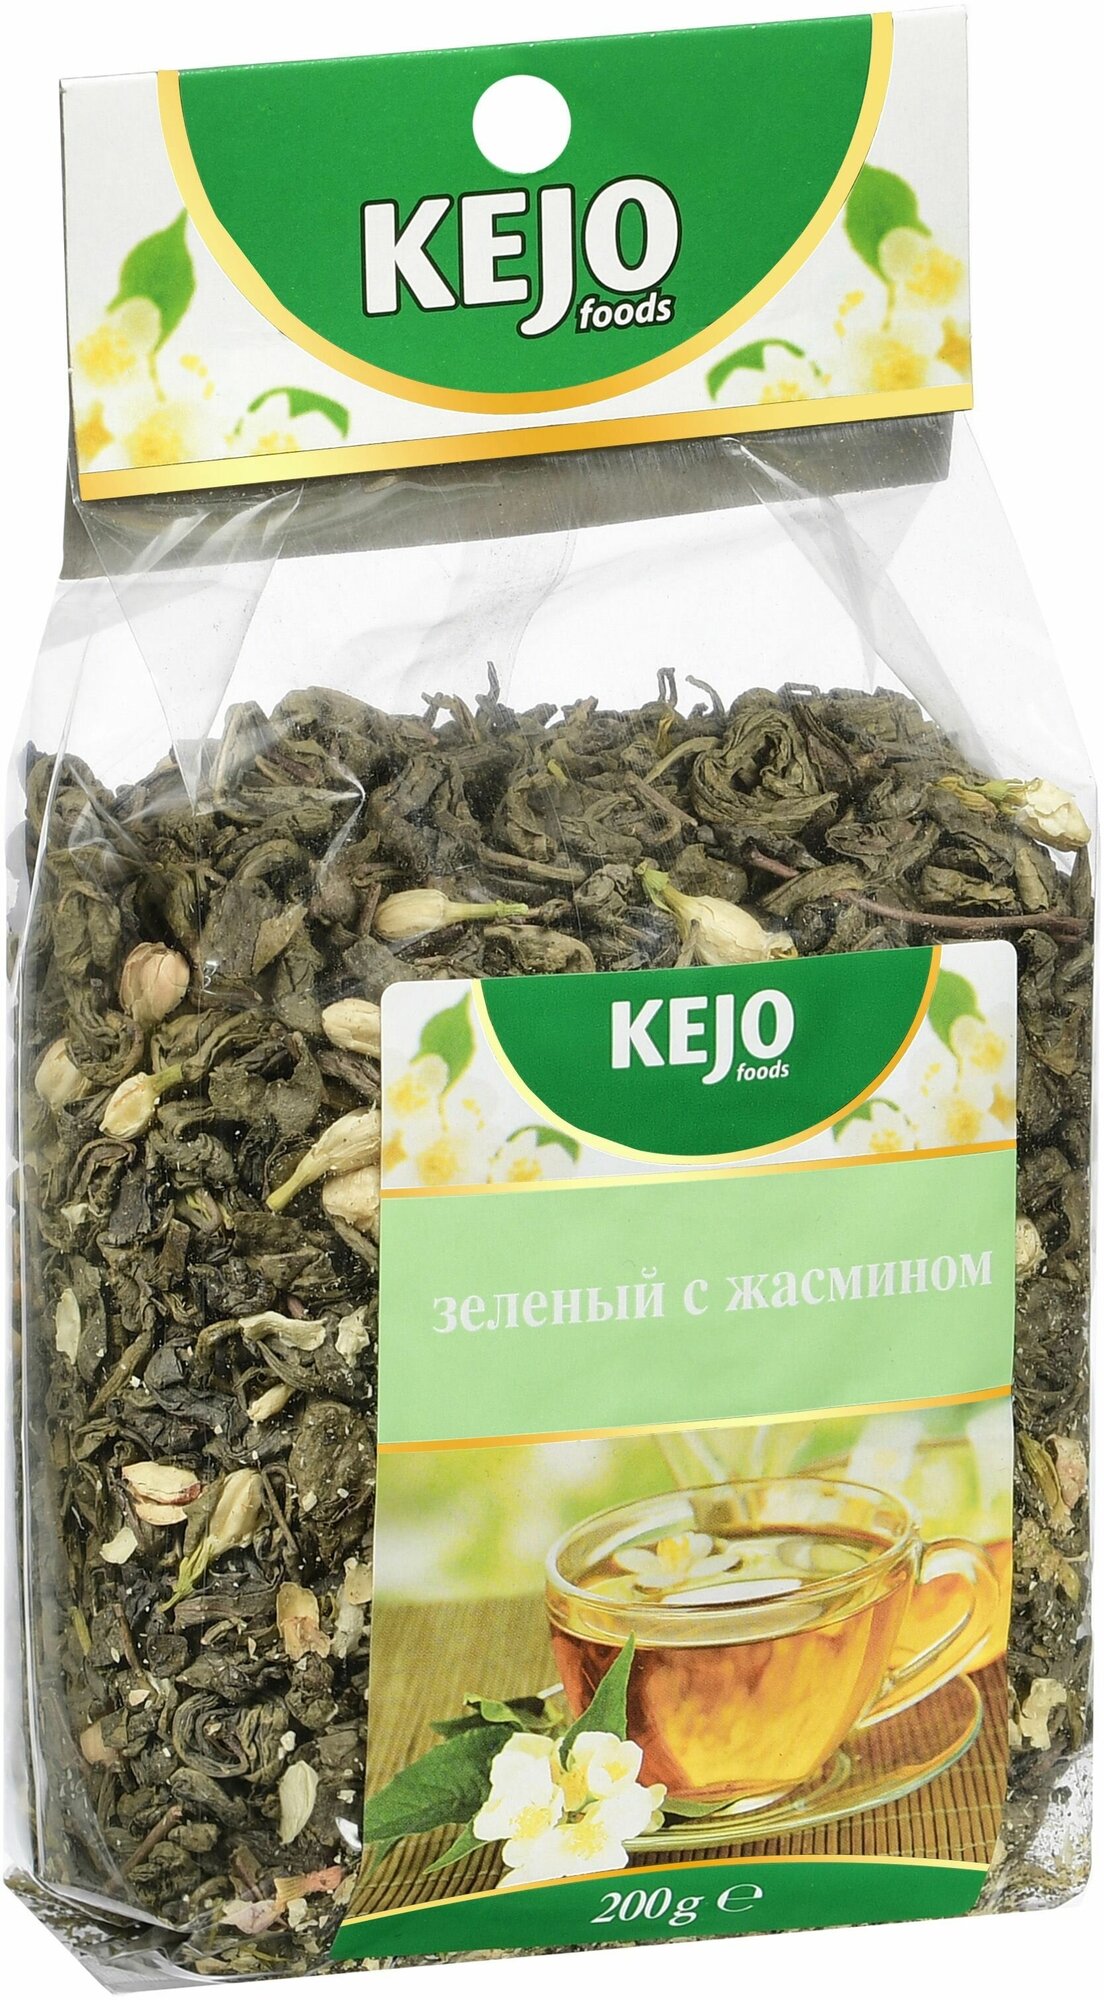 Чай листовой KEJOfoods зелёный с жасмином 200 гр м/у